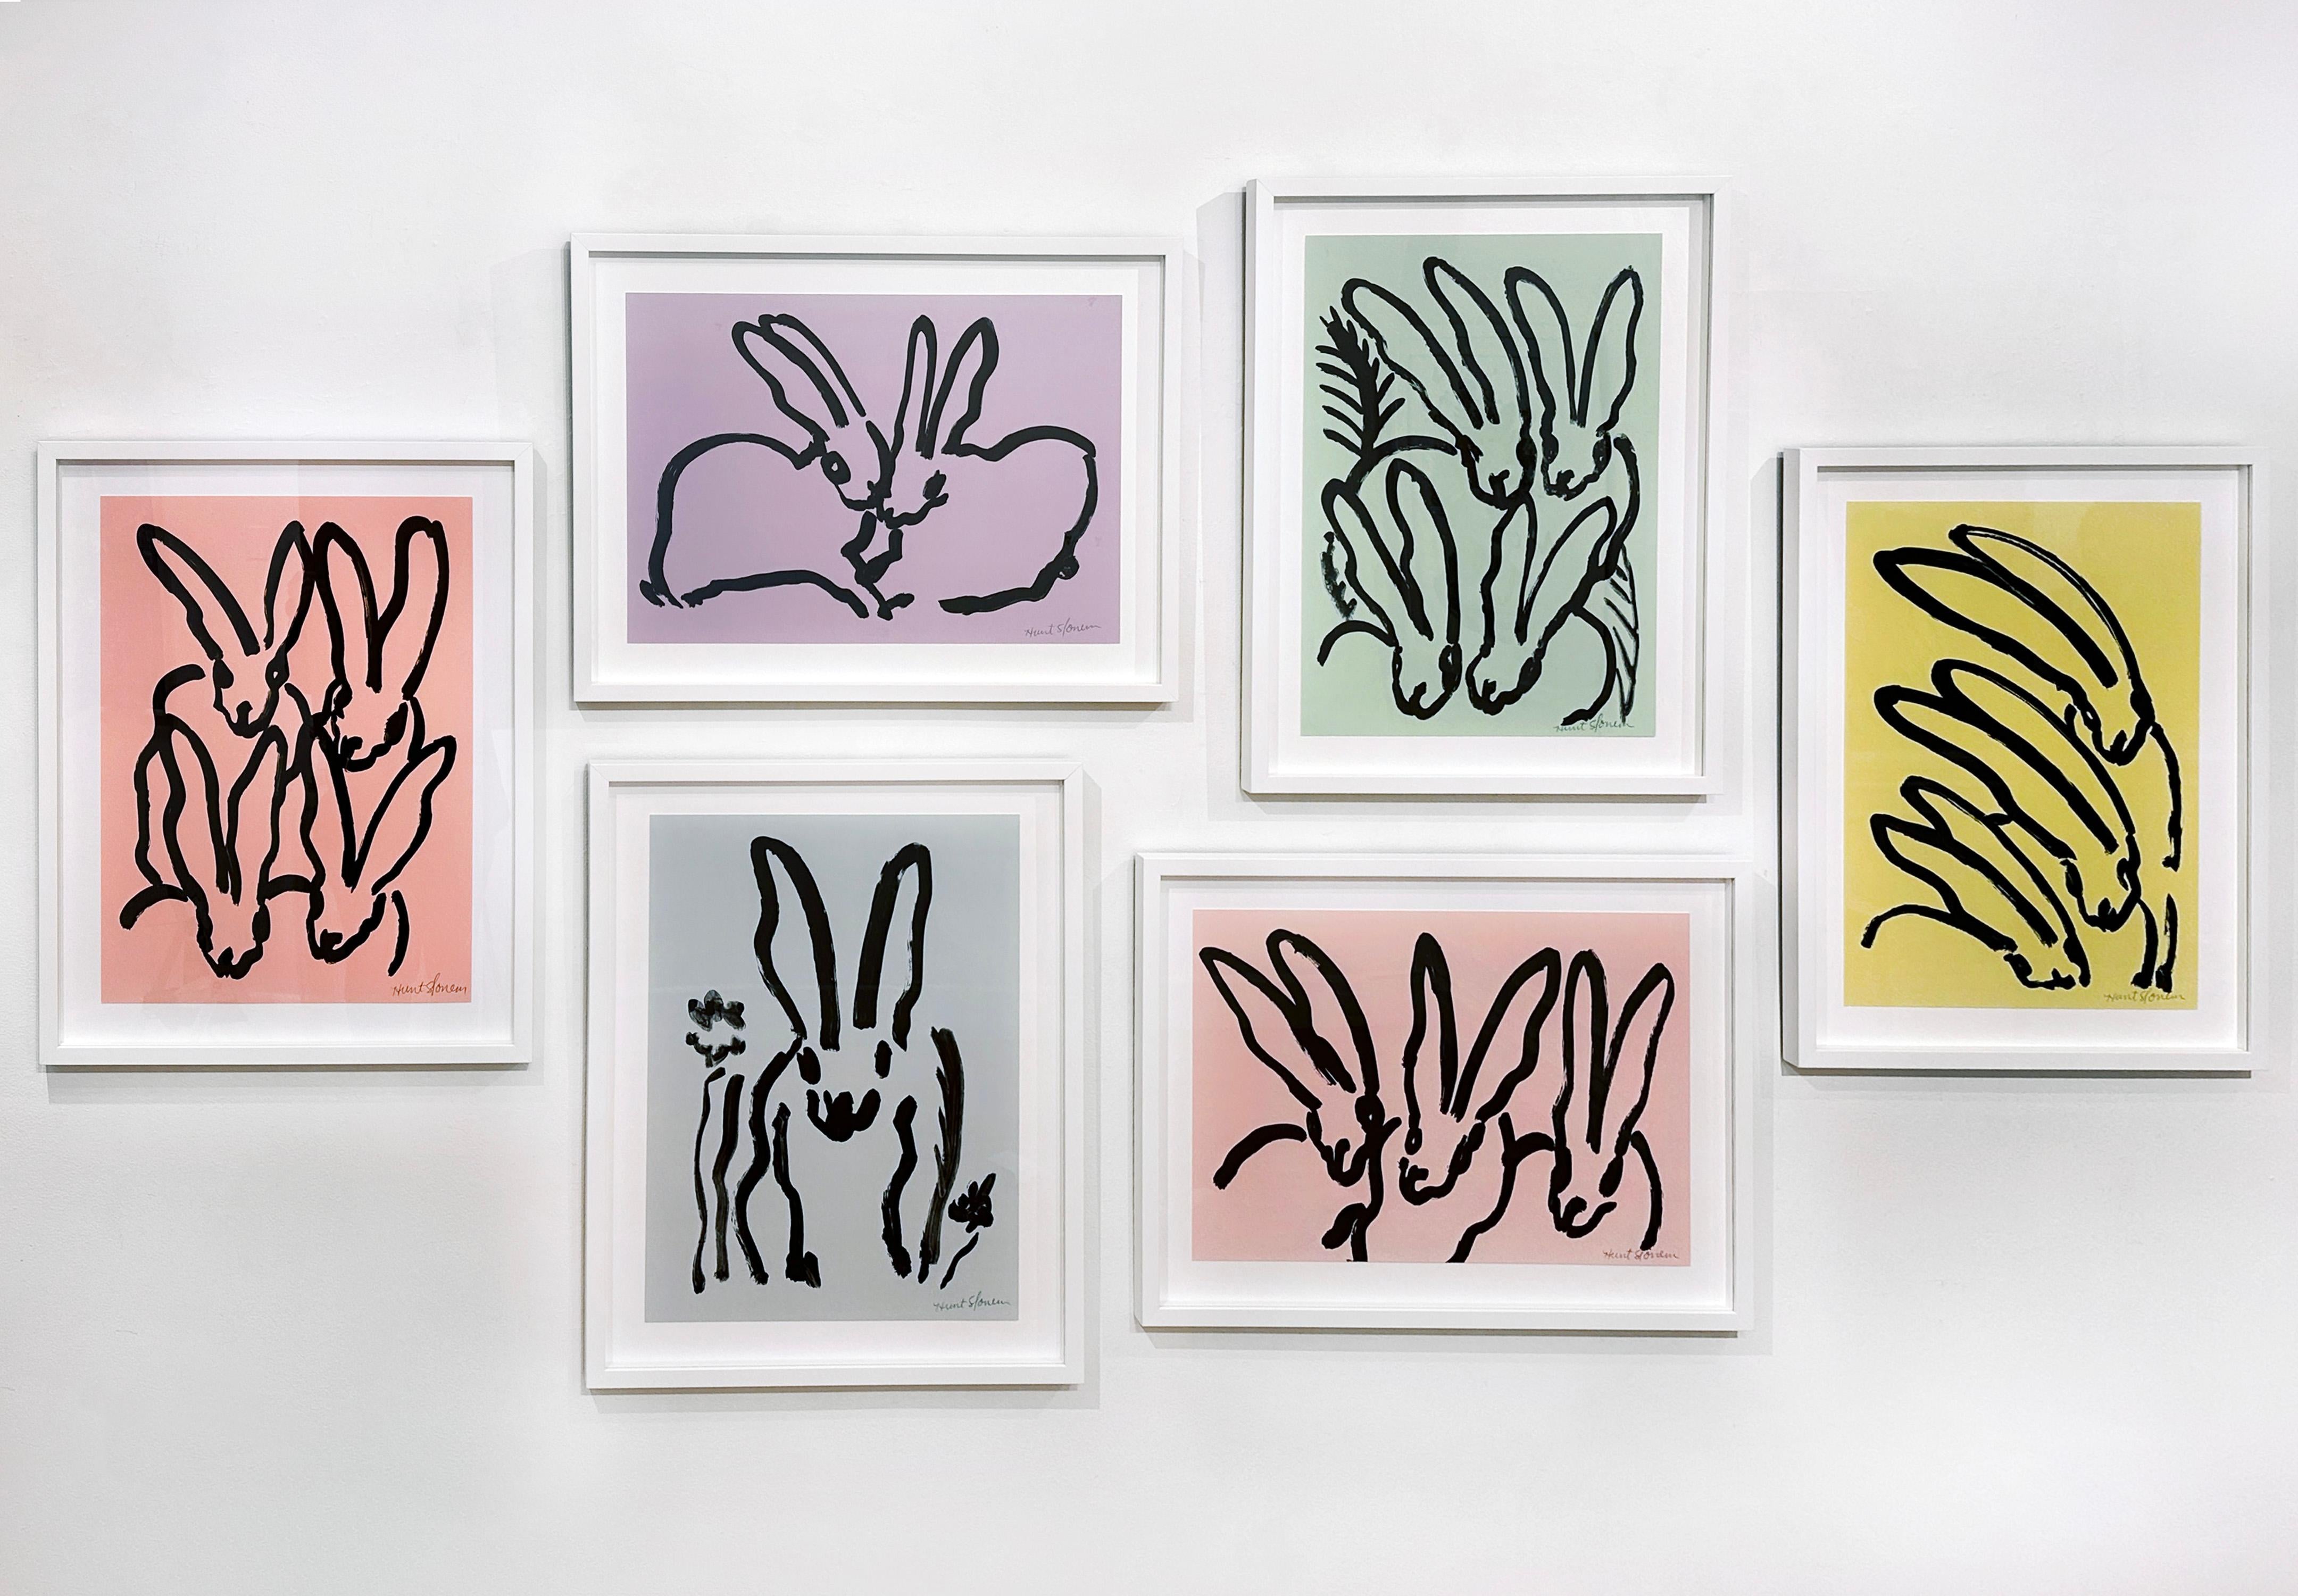 Künstler:  Slonem, Hunt
Titel:  Wolkenhase
Serie:  Kaninchen
Datum:  2017
Medium:  Lithographie auf Papier
Ungerahmt Abmessungen:  24